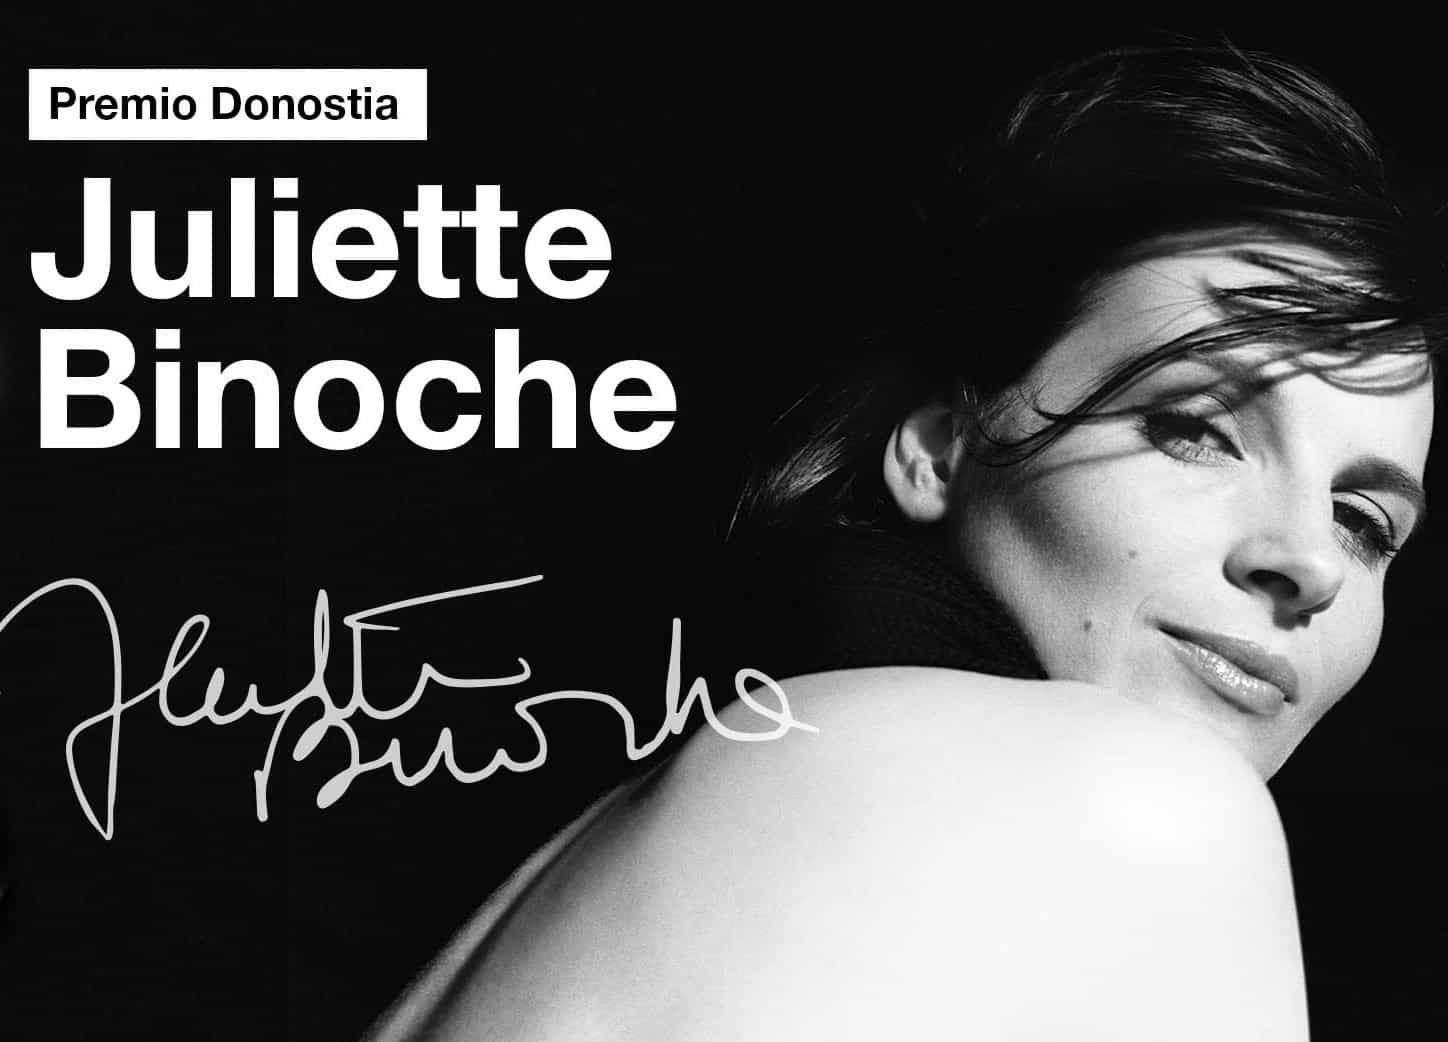 Juliette Binoche recibirá un Premio Donostia en la 70 edición del festival